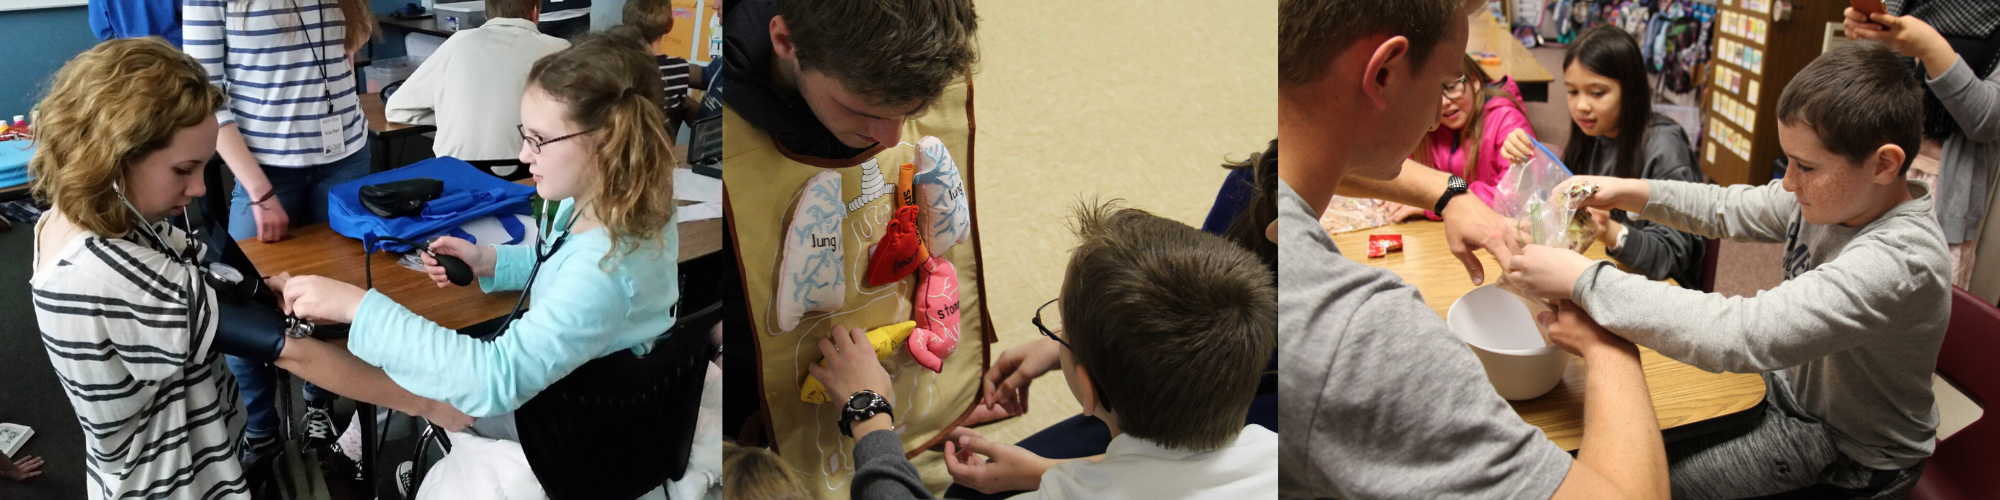 Students teach children about anatomy